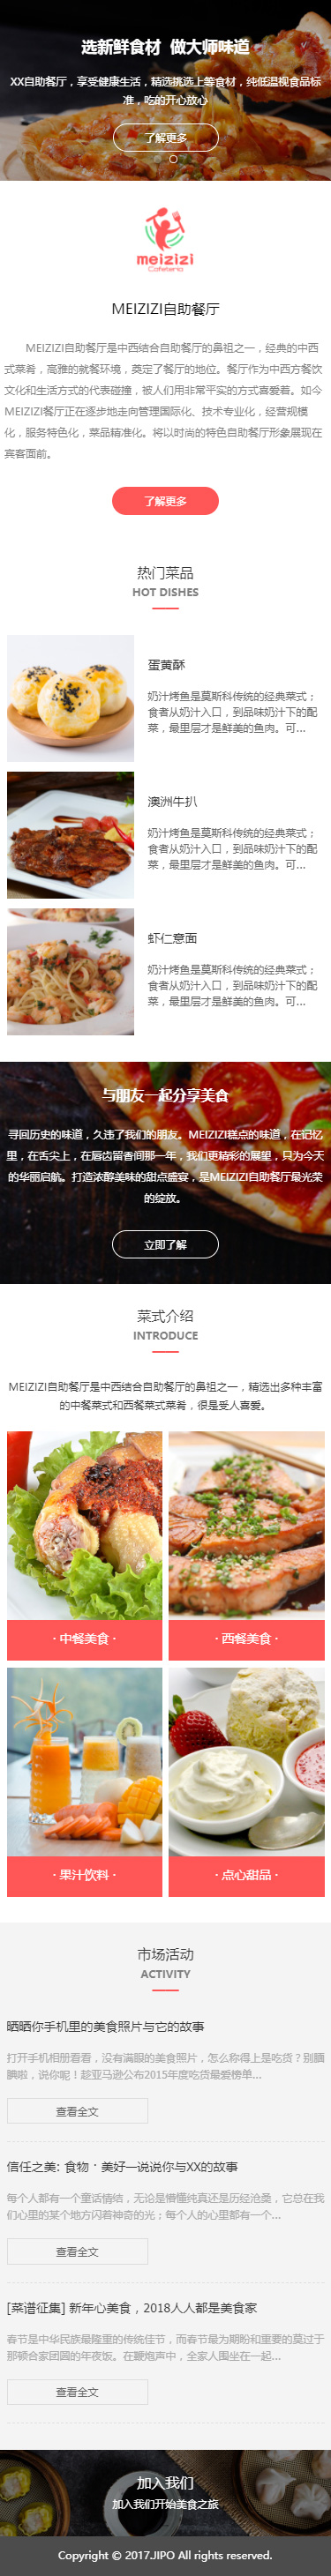 MEIZIZI自助餐厅展示小程序模板